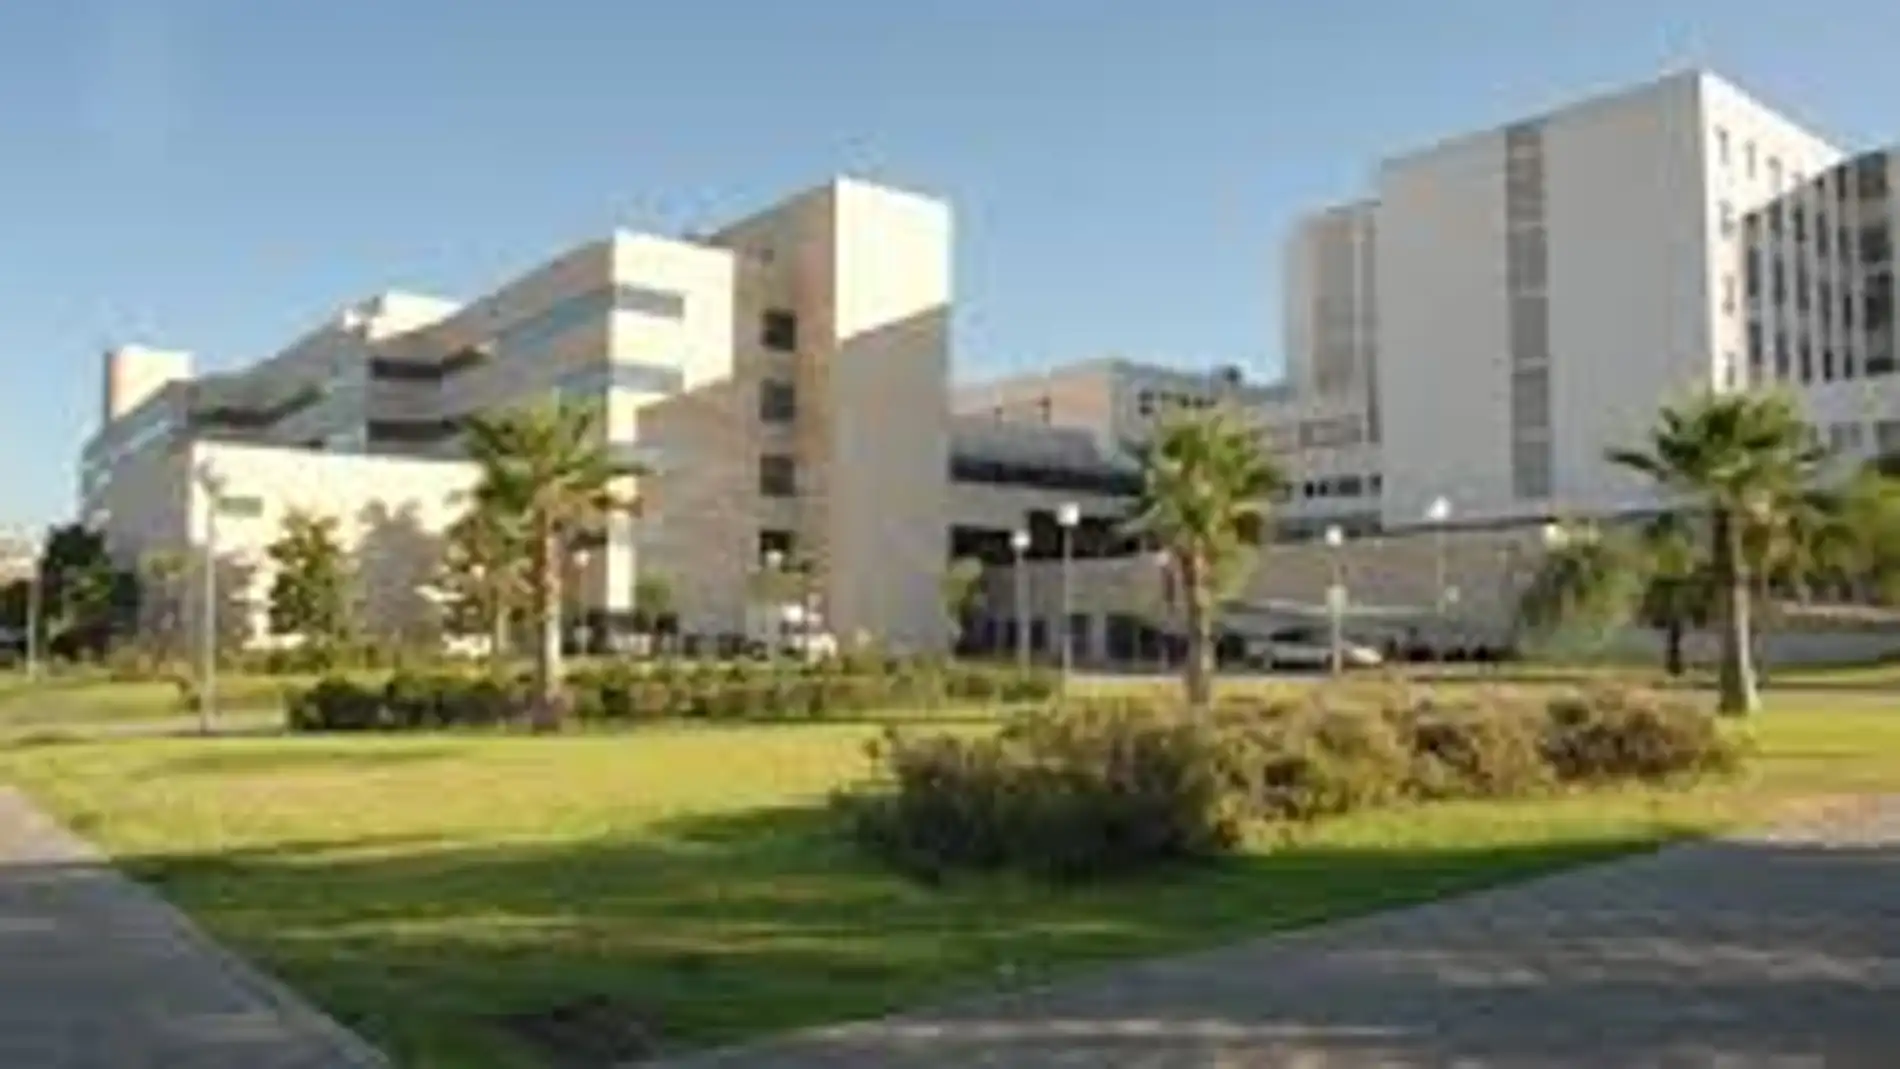 Hospital Reina Sofía. Córdoba